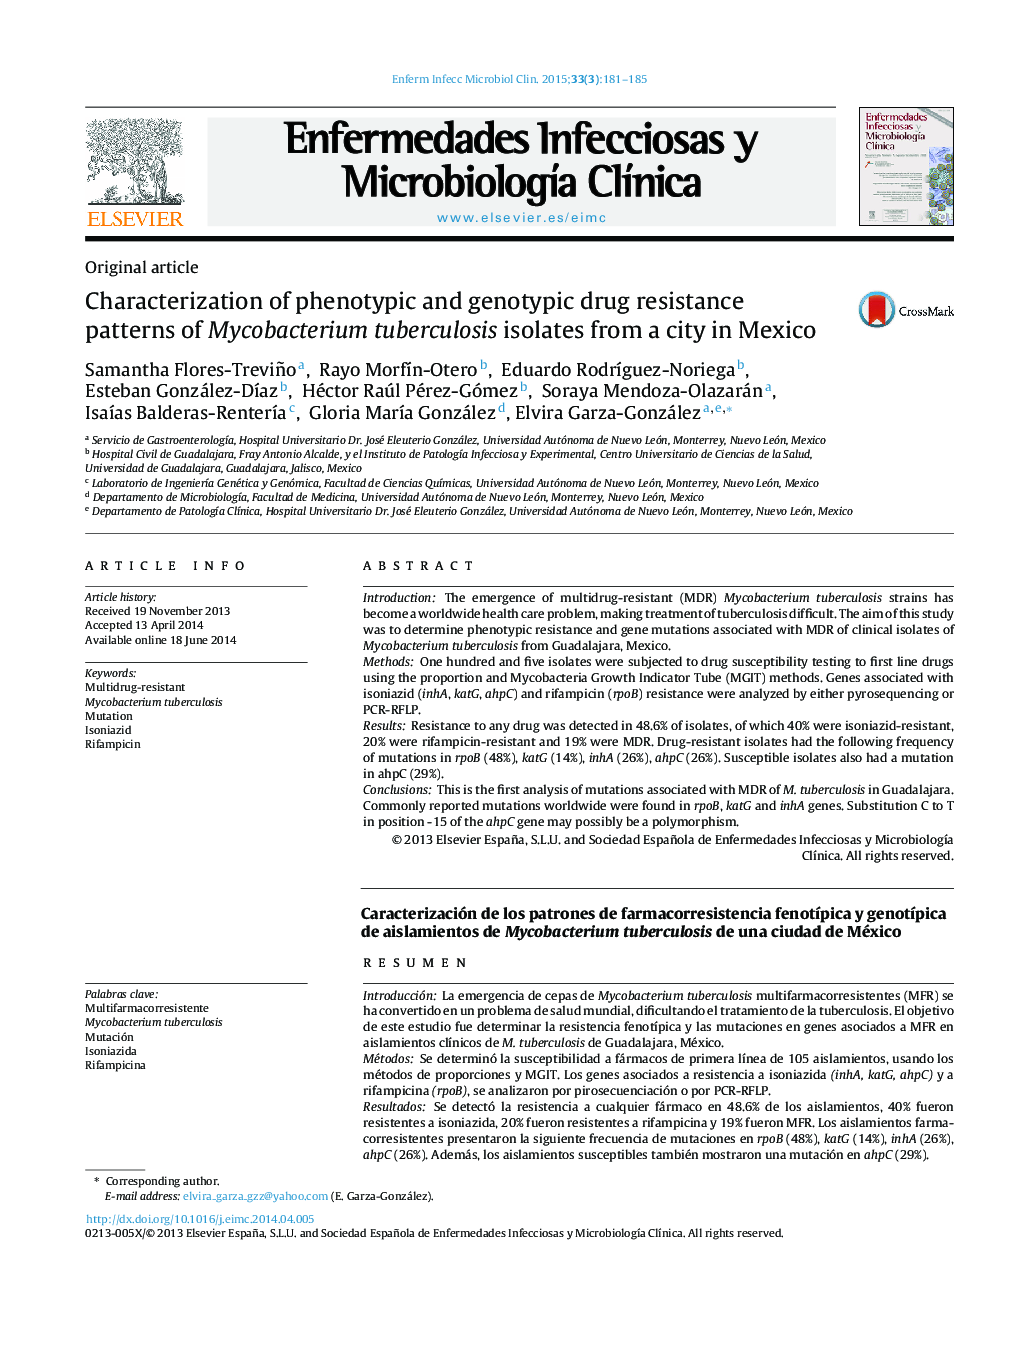 تشخیص الگوهای مقاوم در برابر داروهای فنوتیپیک و ژنوتیپی از جدایه های میکوباکتریوم توبرکلوز از یک شهر در مکزیک 